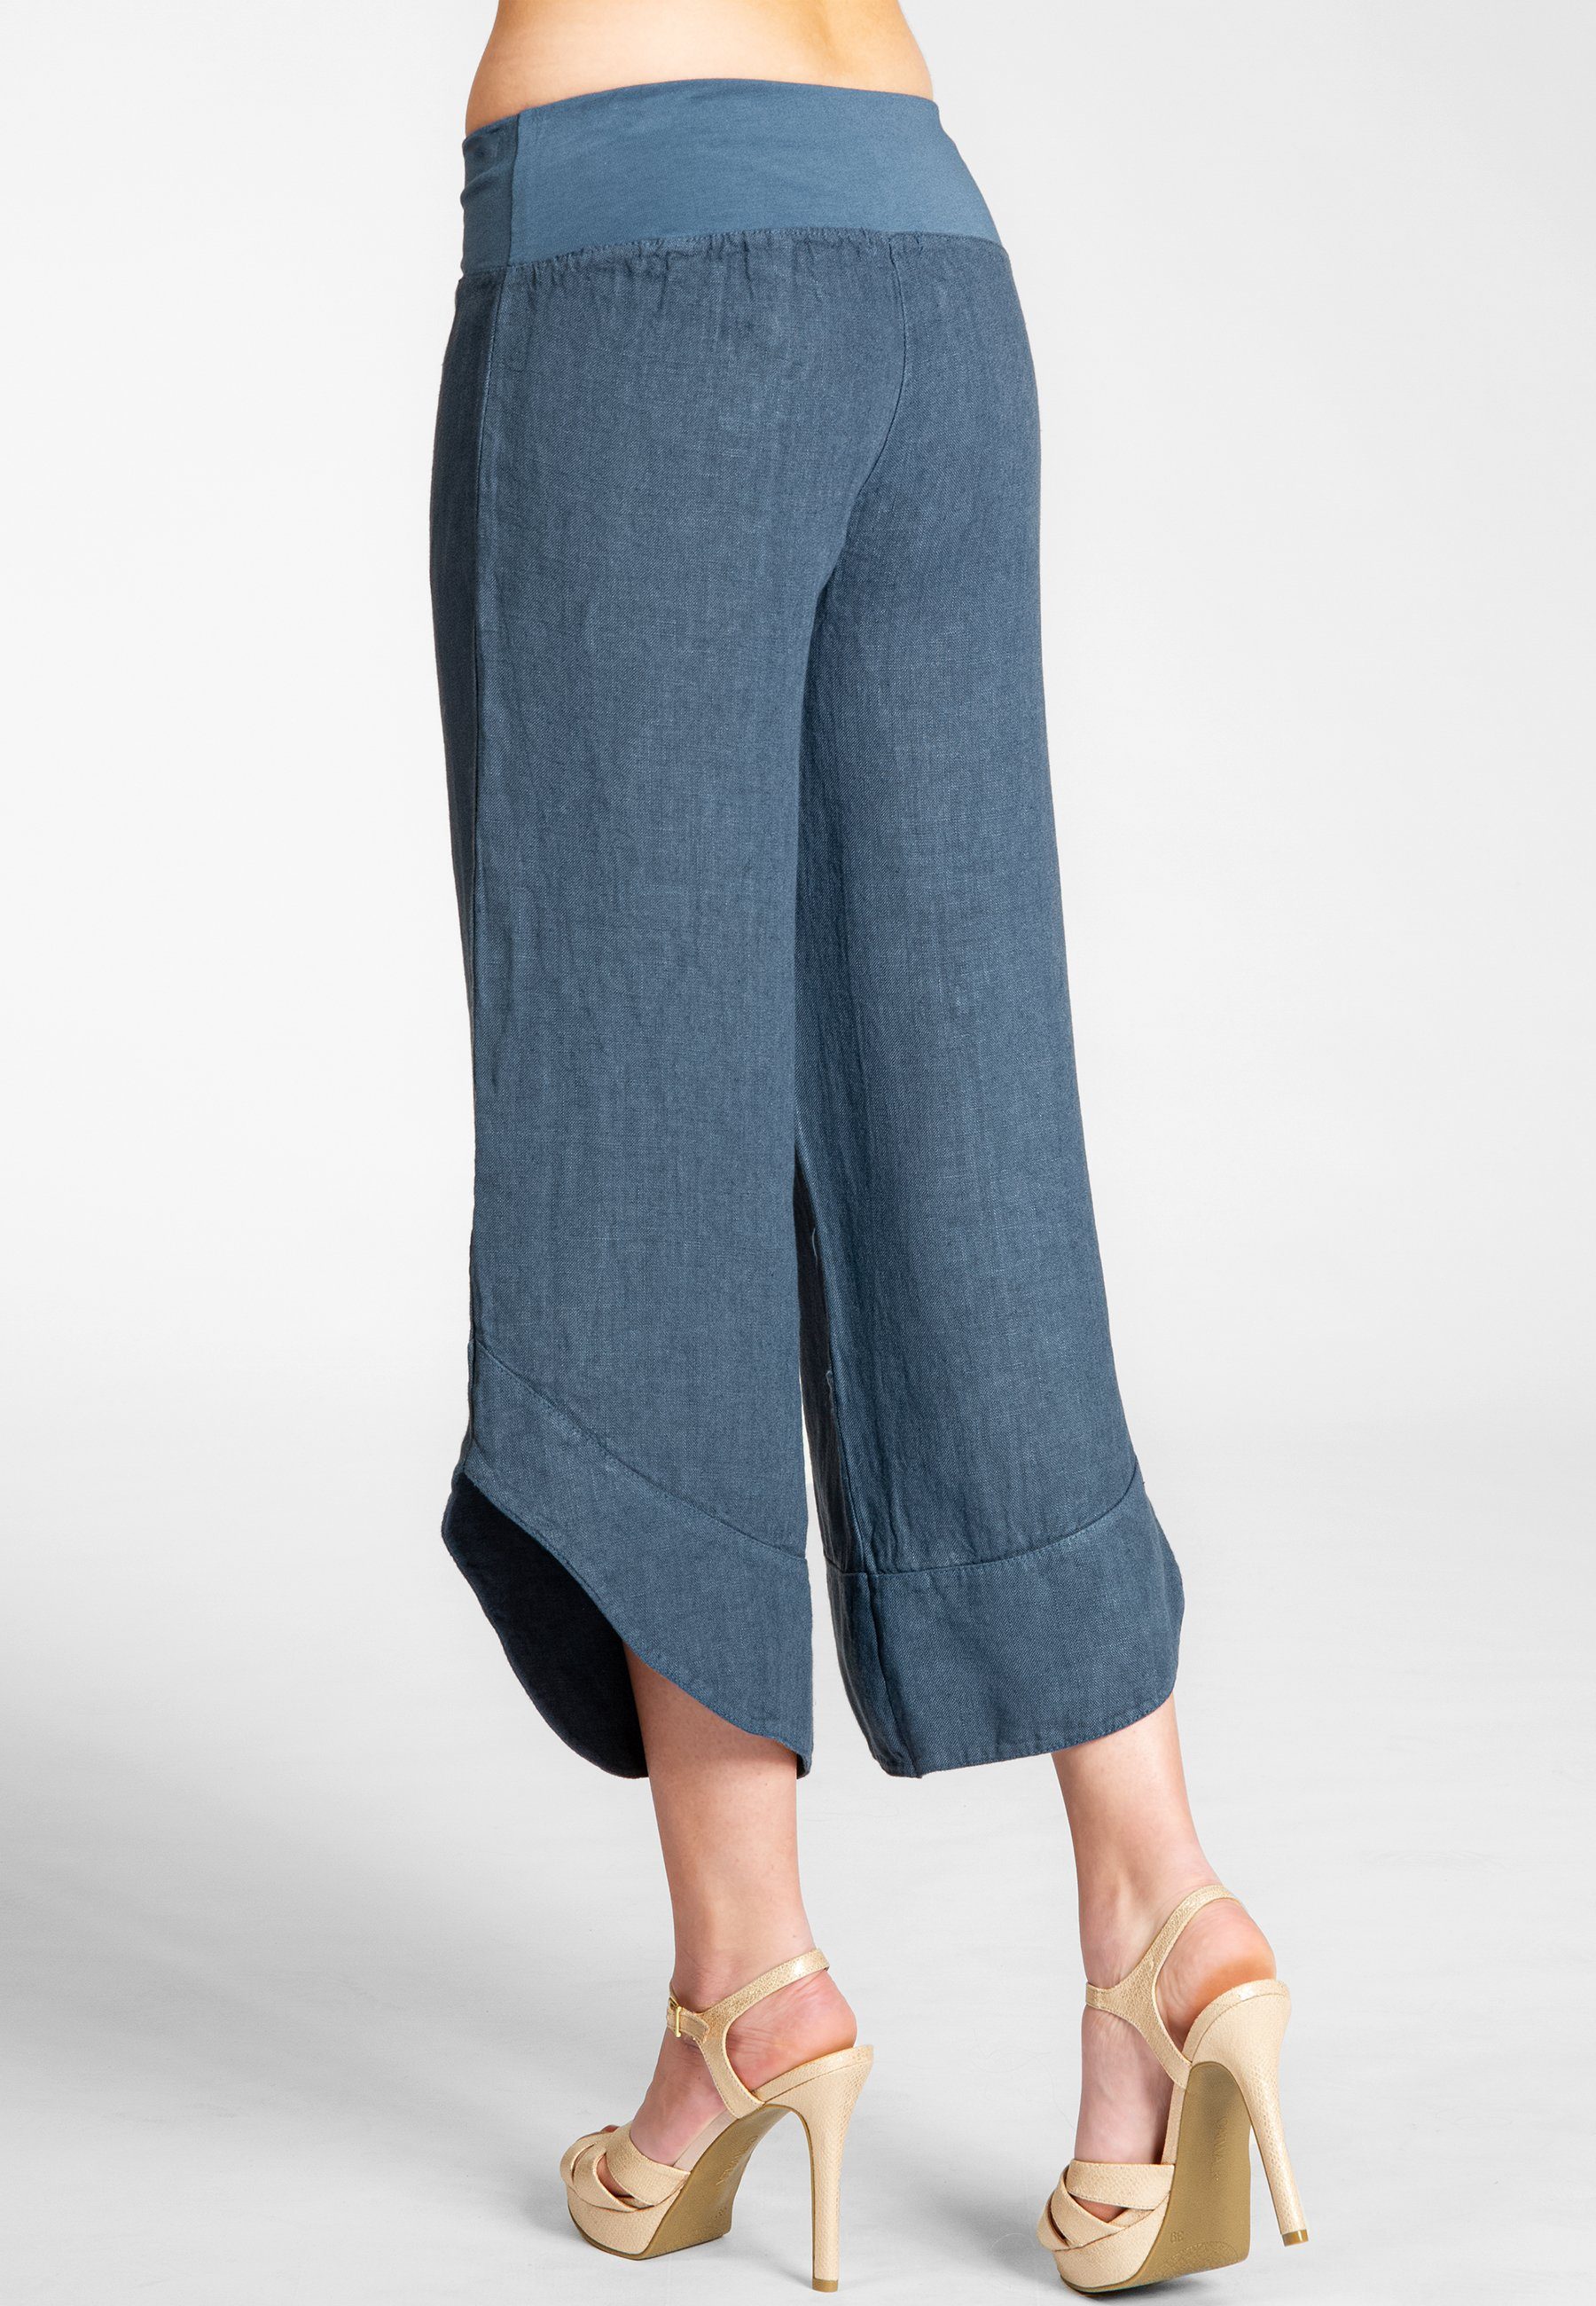 Caspar Leinenhose KHS052 Damen 3/4 robustem jeans blau Leinen Hose aus Capri